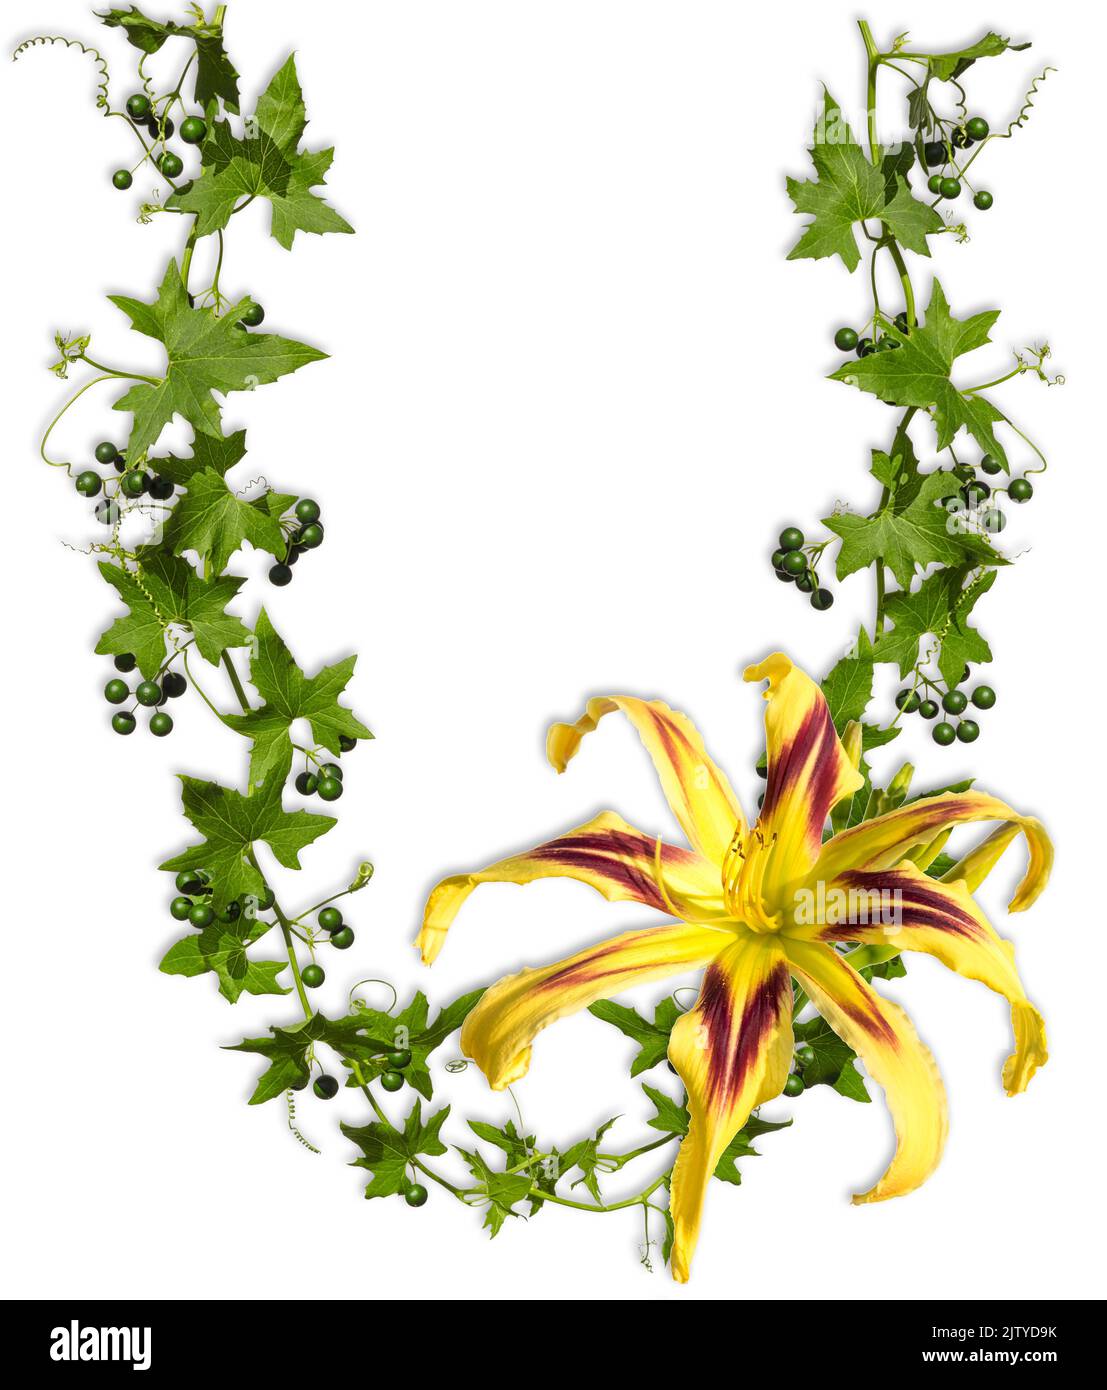 Feuilles de lierre en forme de U avec fleur hémerocallis isolée sur fond blanc comme cadre. Banque D'Images